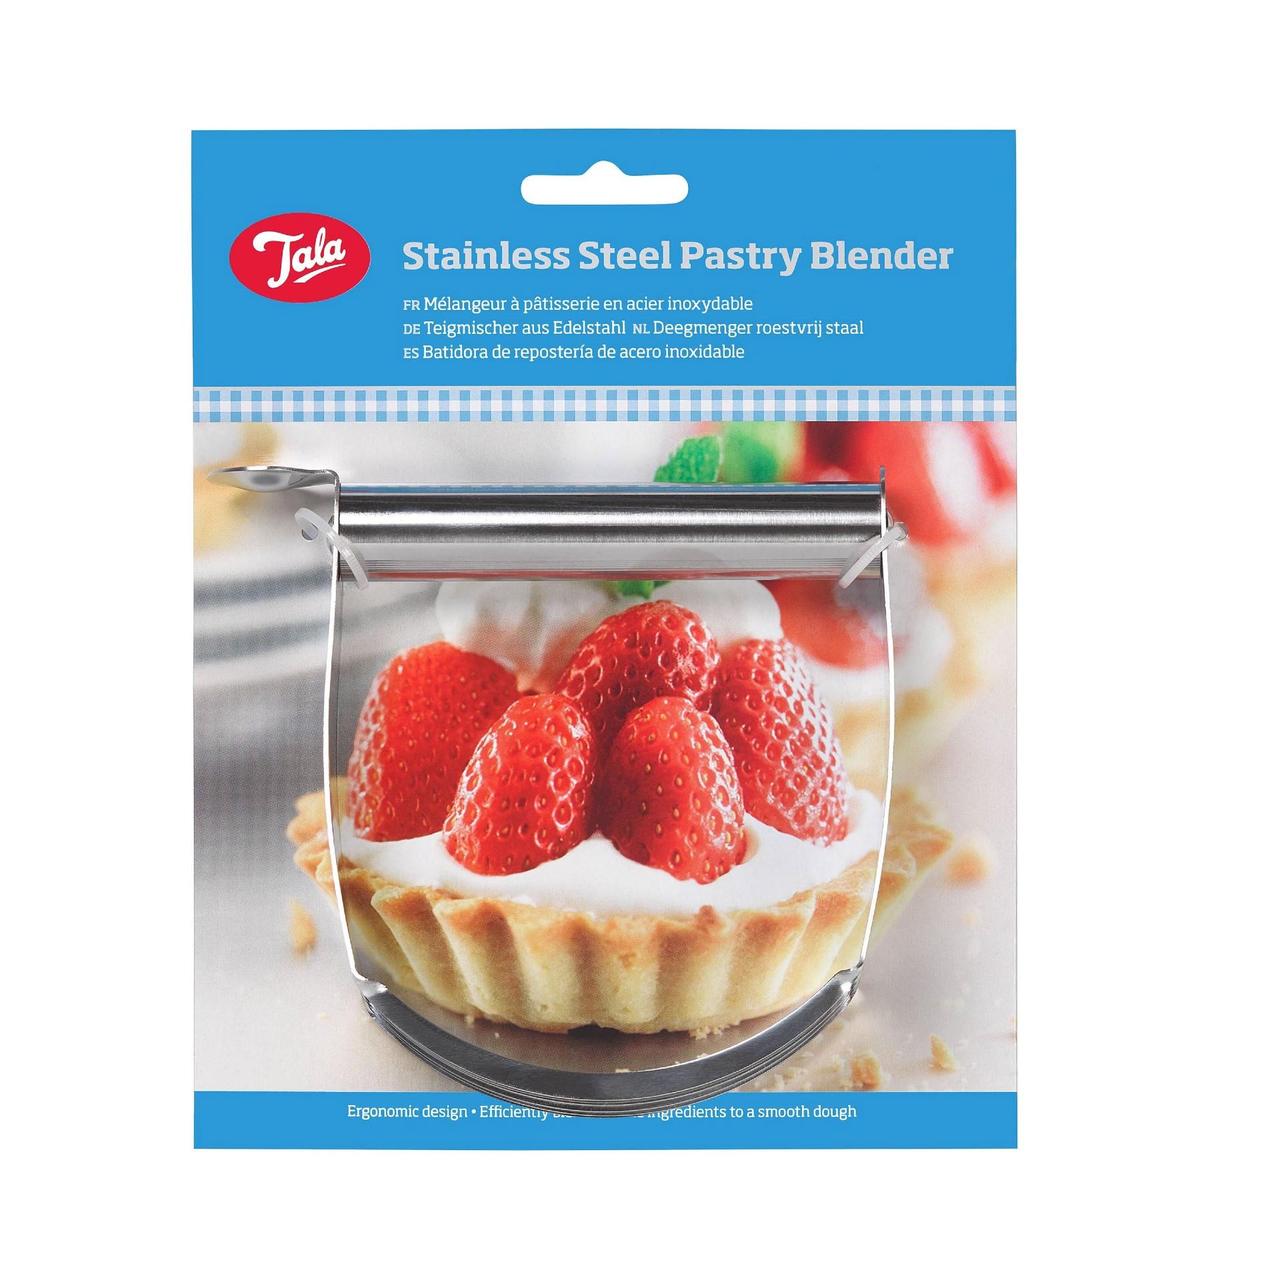 Stainless-Steel Pastry Blender